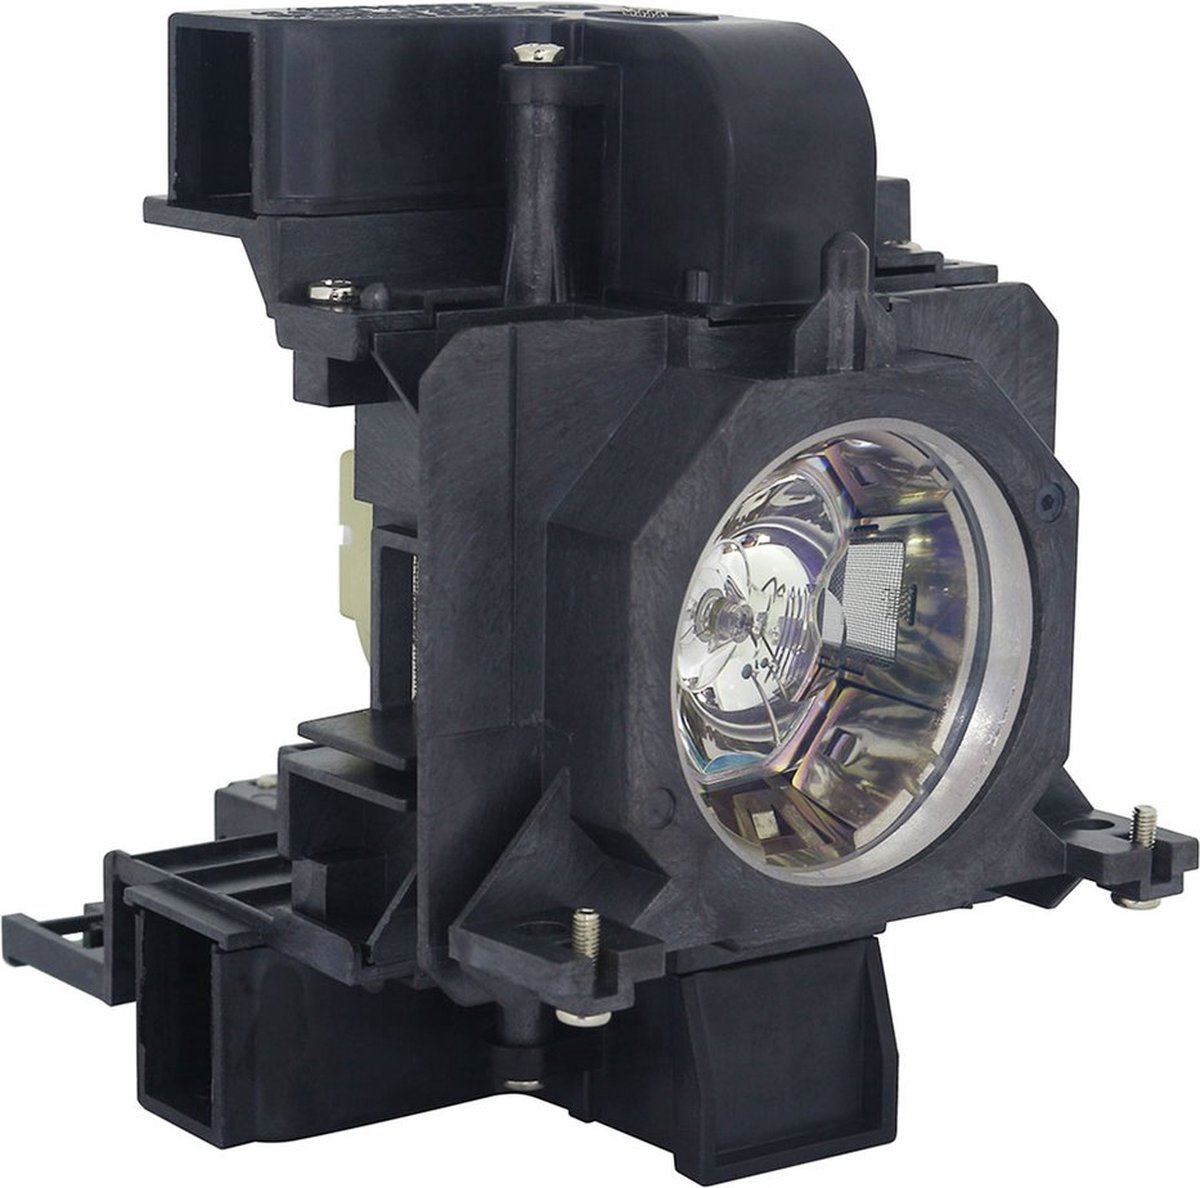 Beamerlamp geschikt voor de PANASONIC PT-EW630 beamer, lamp code ET-LAE200. Bevat originele UHP lamp, prestaties gelijk aan origineel.